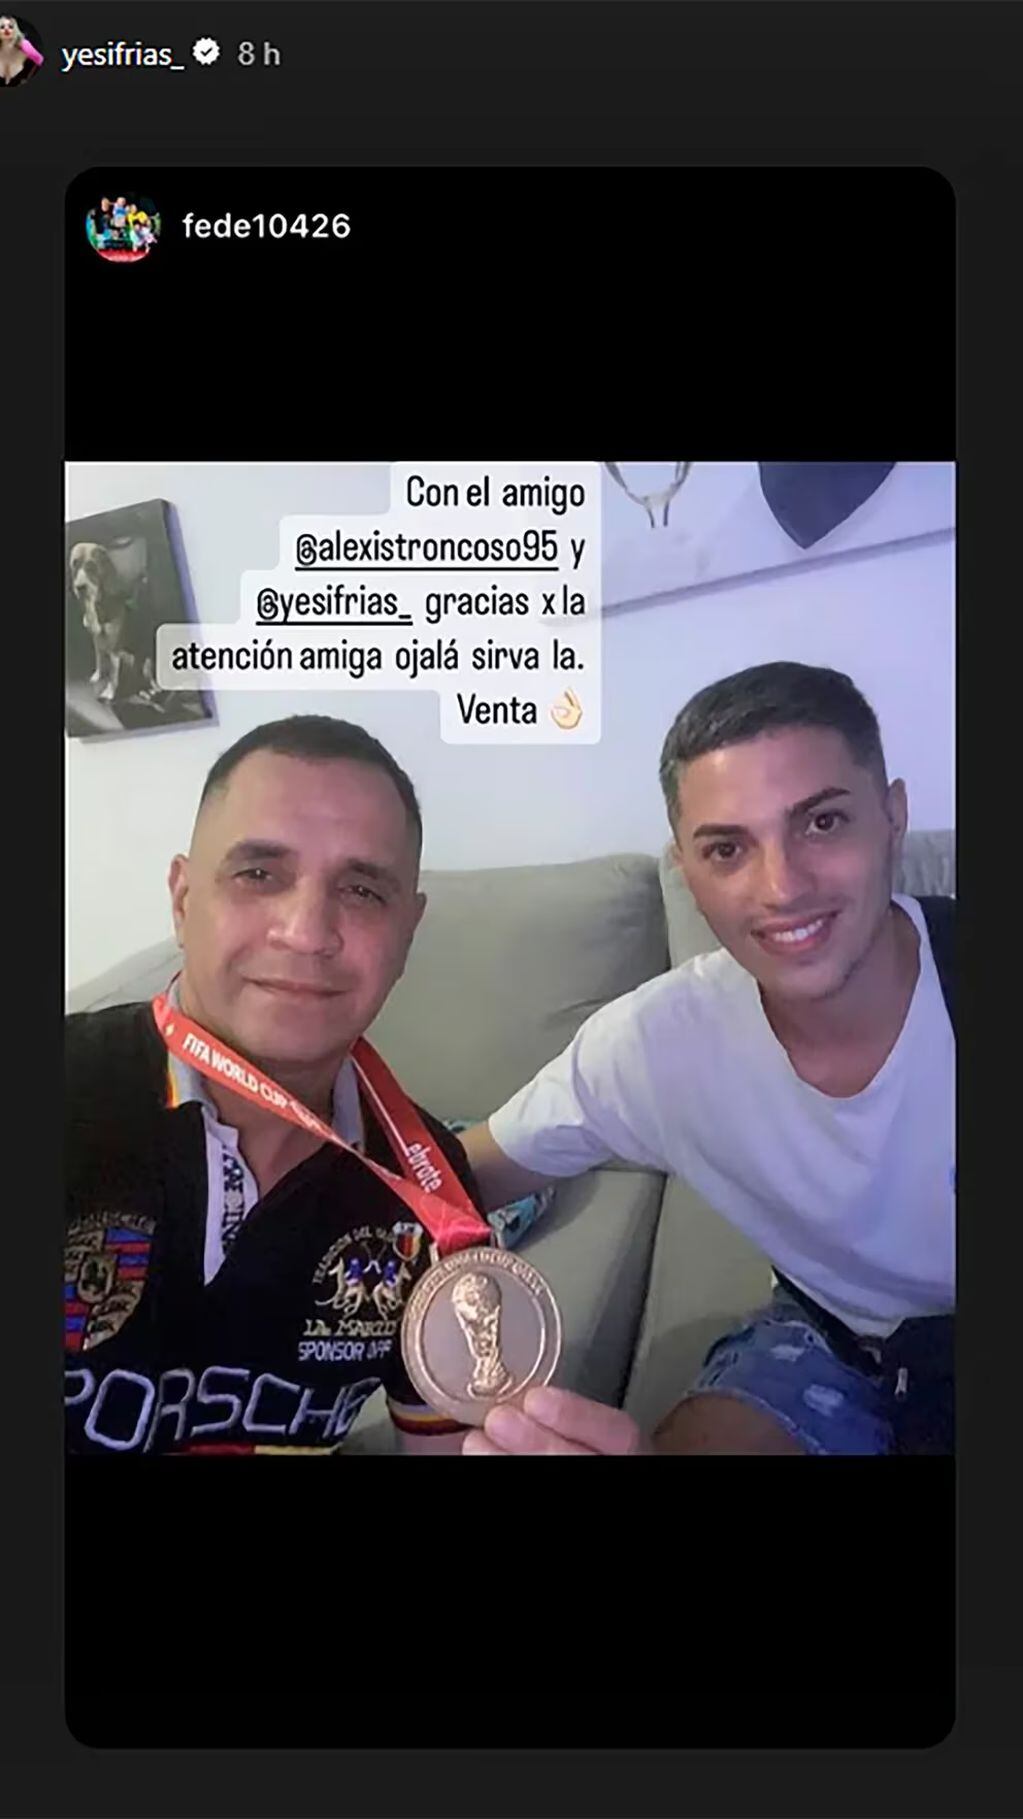 La ex de Exequiel Palacios le vendió la medalla de campeón del mundo